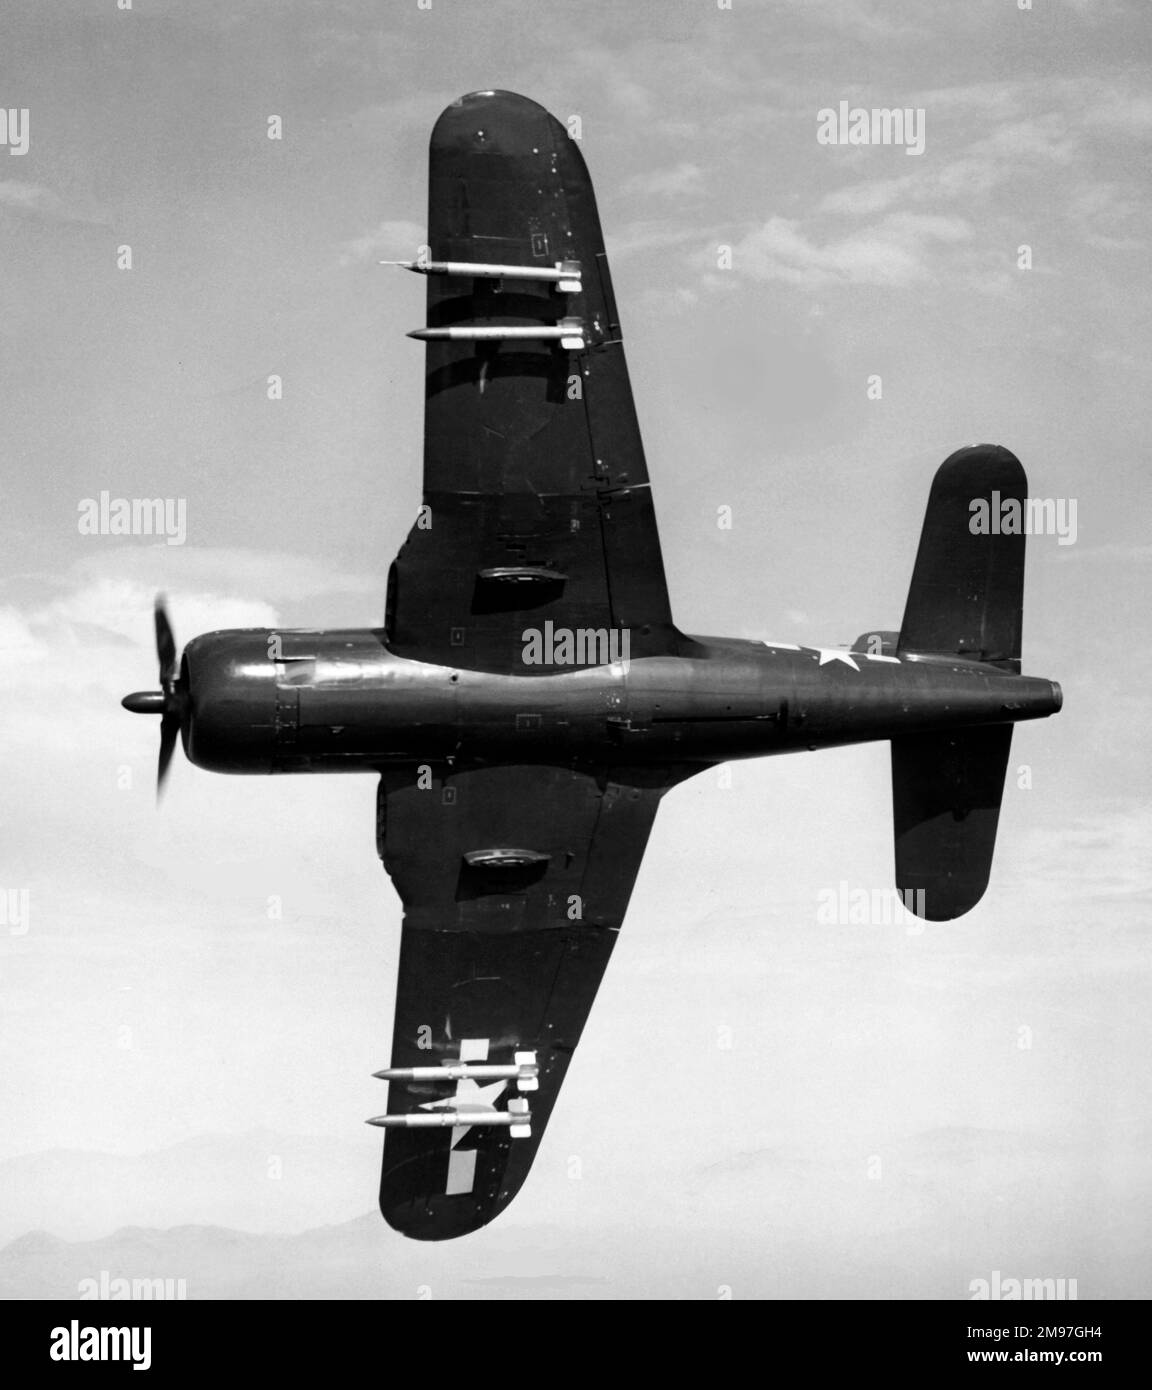 Ryan FR-1 Fireball -de l'extérieur comme ses contemporains, ce chasseur avait un moteur à jet (AFT) pour augmenter sa vitesse. Banque D'Images